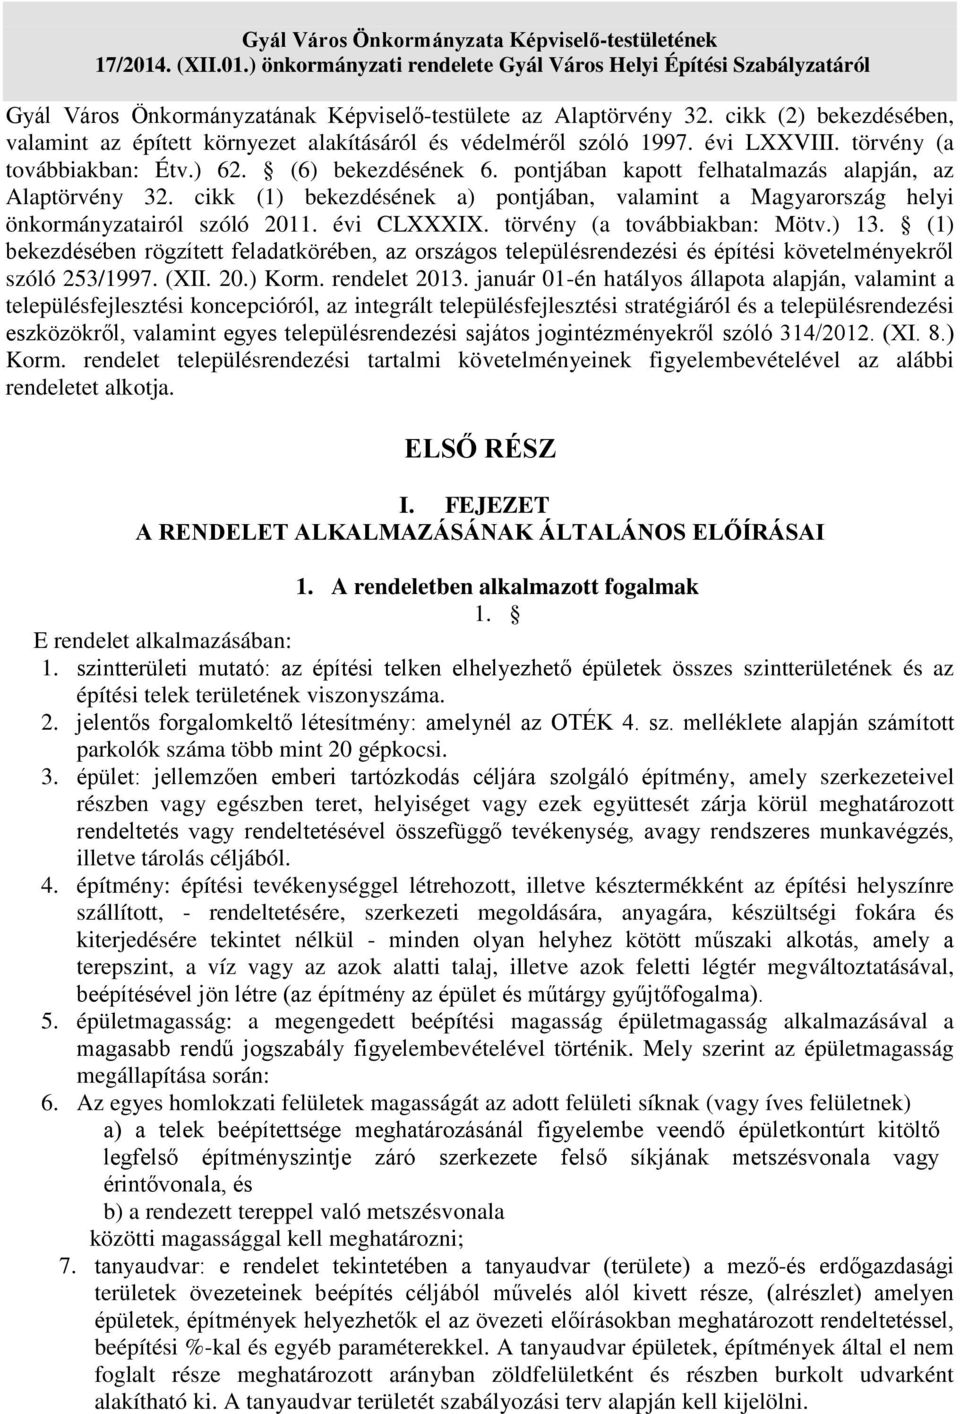 pontjában kapott felhatalmazás alapján, az Alaptörvény 32. cikk (1) bekezdésének a) pontjában, valamint a Magyarország helyi önkormányzatairól szóló 2011. évi CLXXXIX. törvény (a továbbiakban: Mötv.